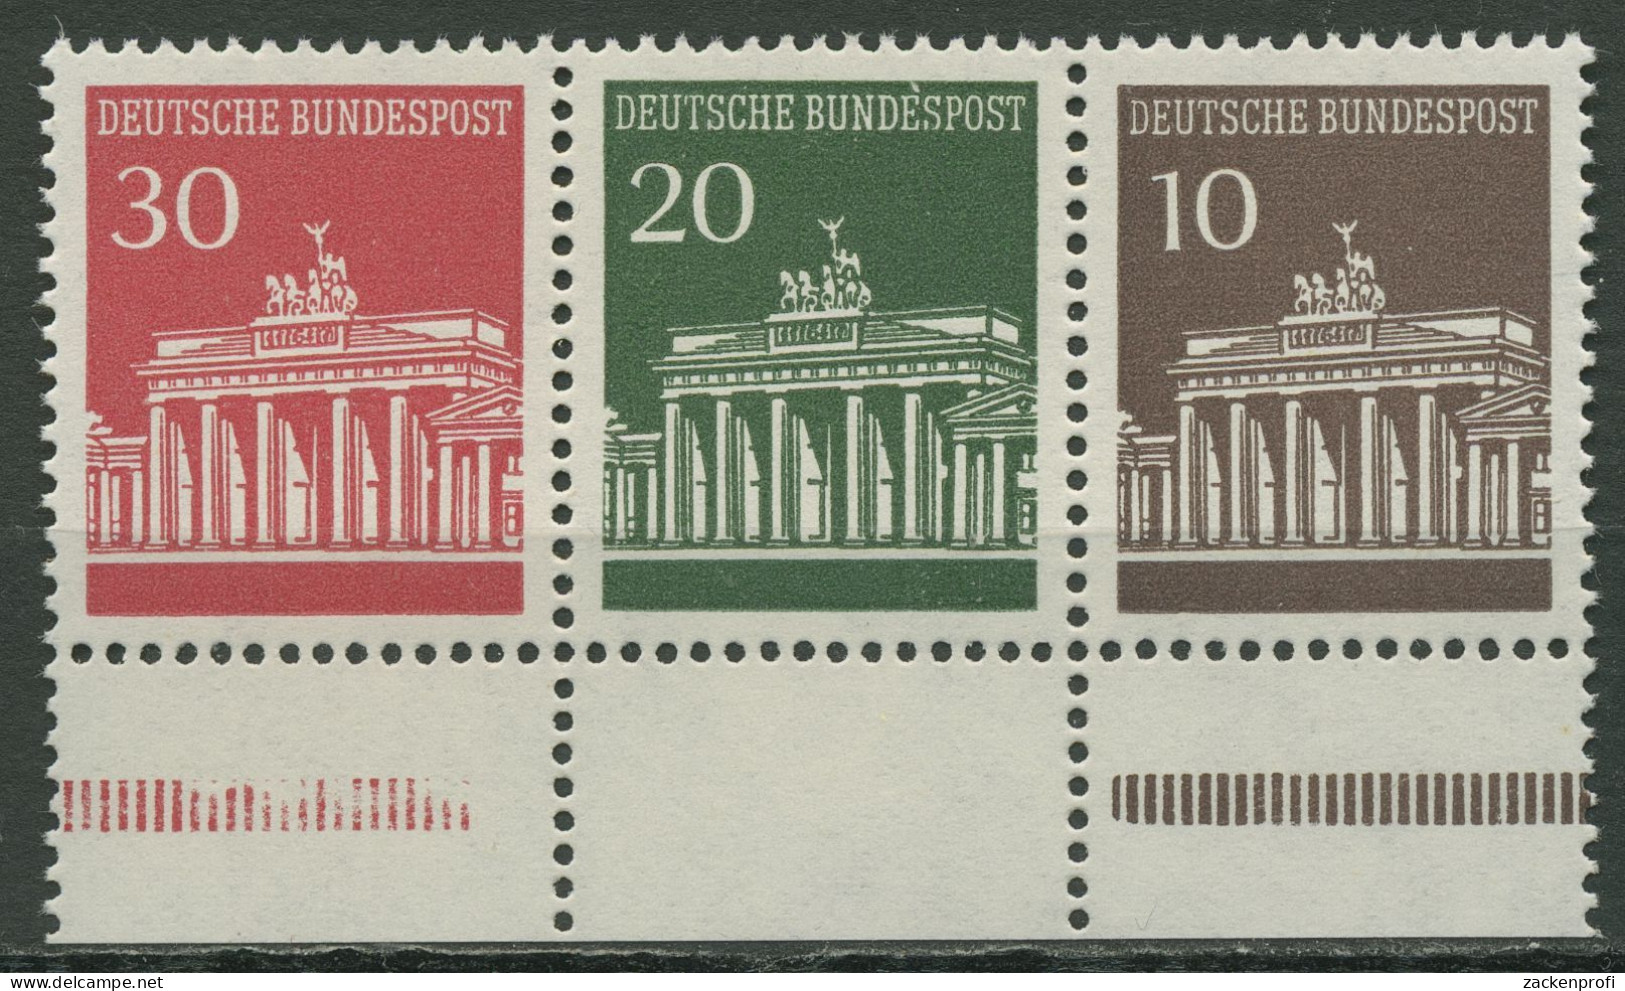 Bund 1967 Brandenburger Tor Zusammendruck W 26.2 UR (4 Mm Abstand) Postfrisch - Zusammendrucke